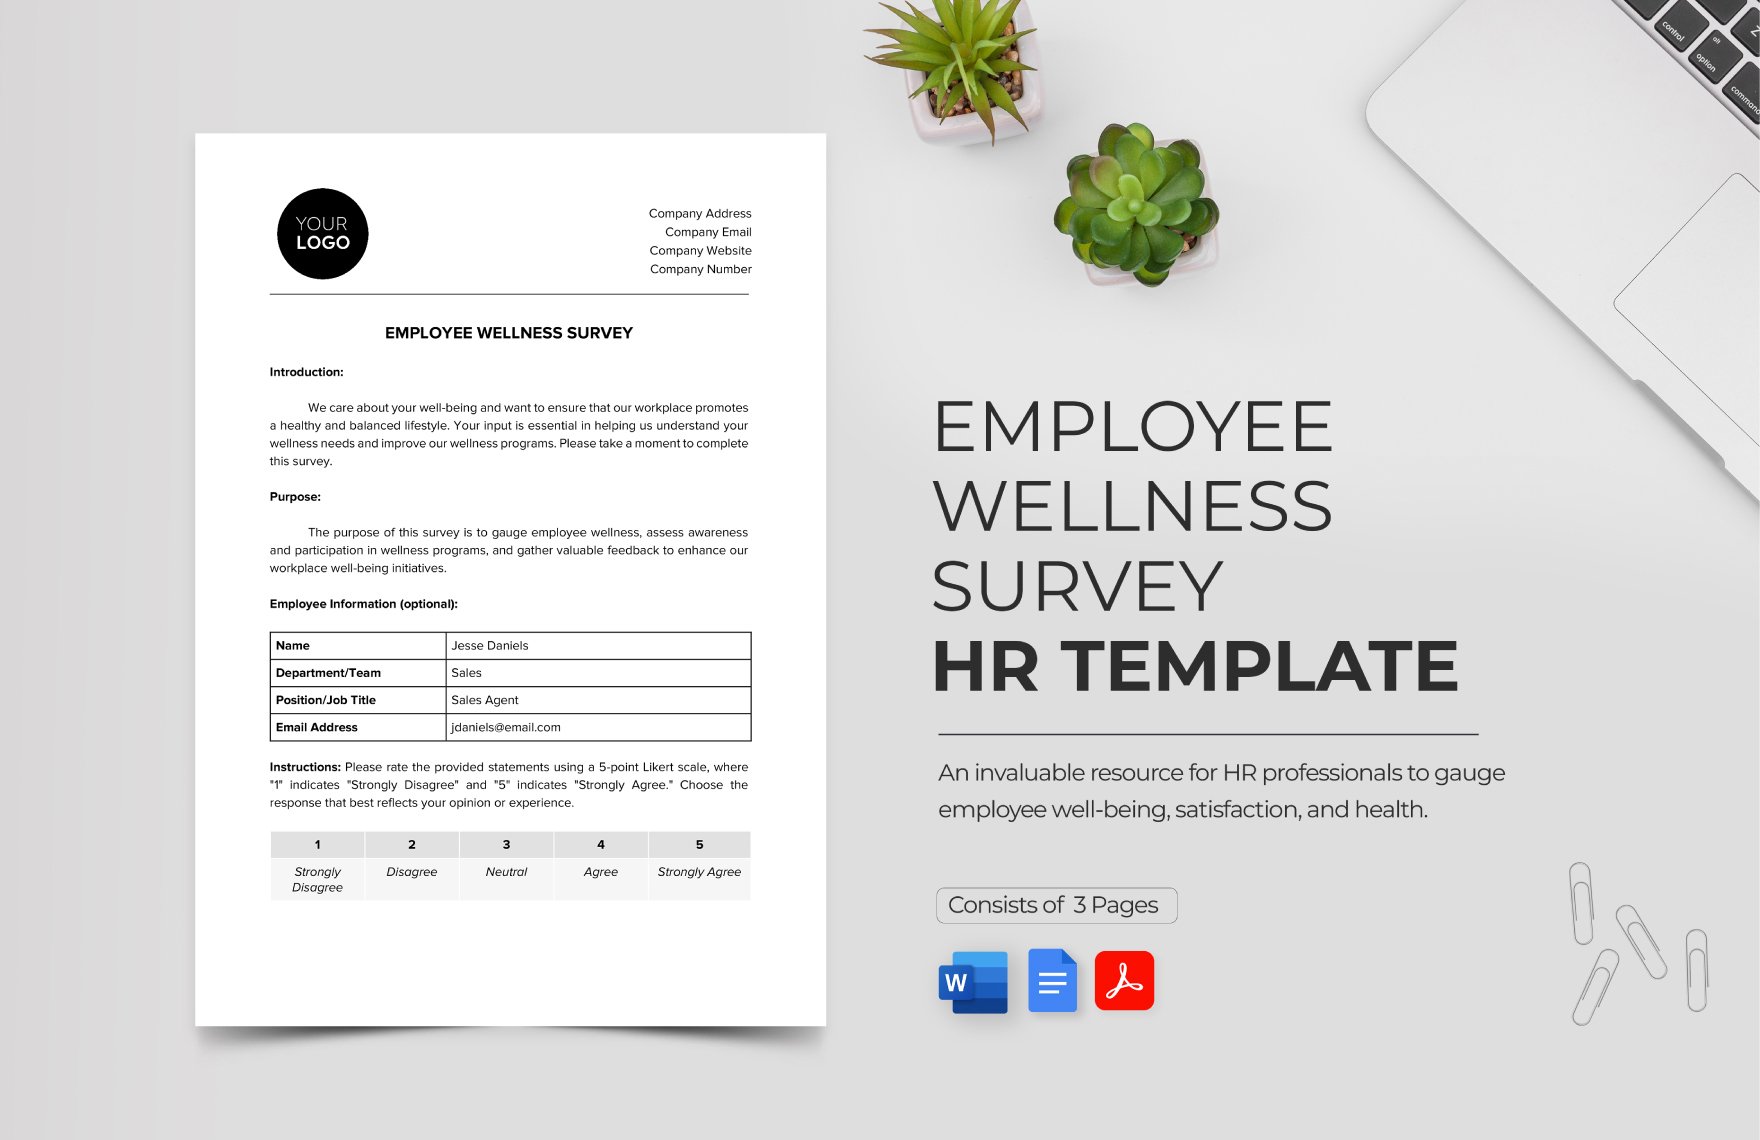 Employee Wellness Survey HR Template